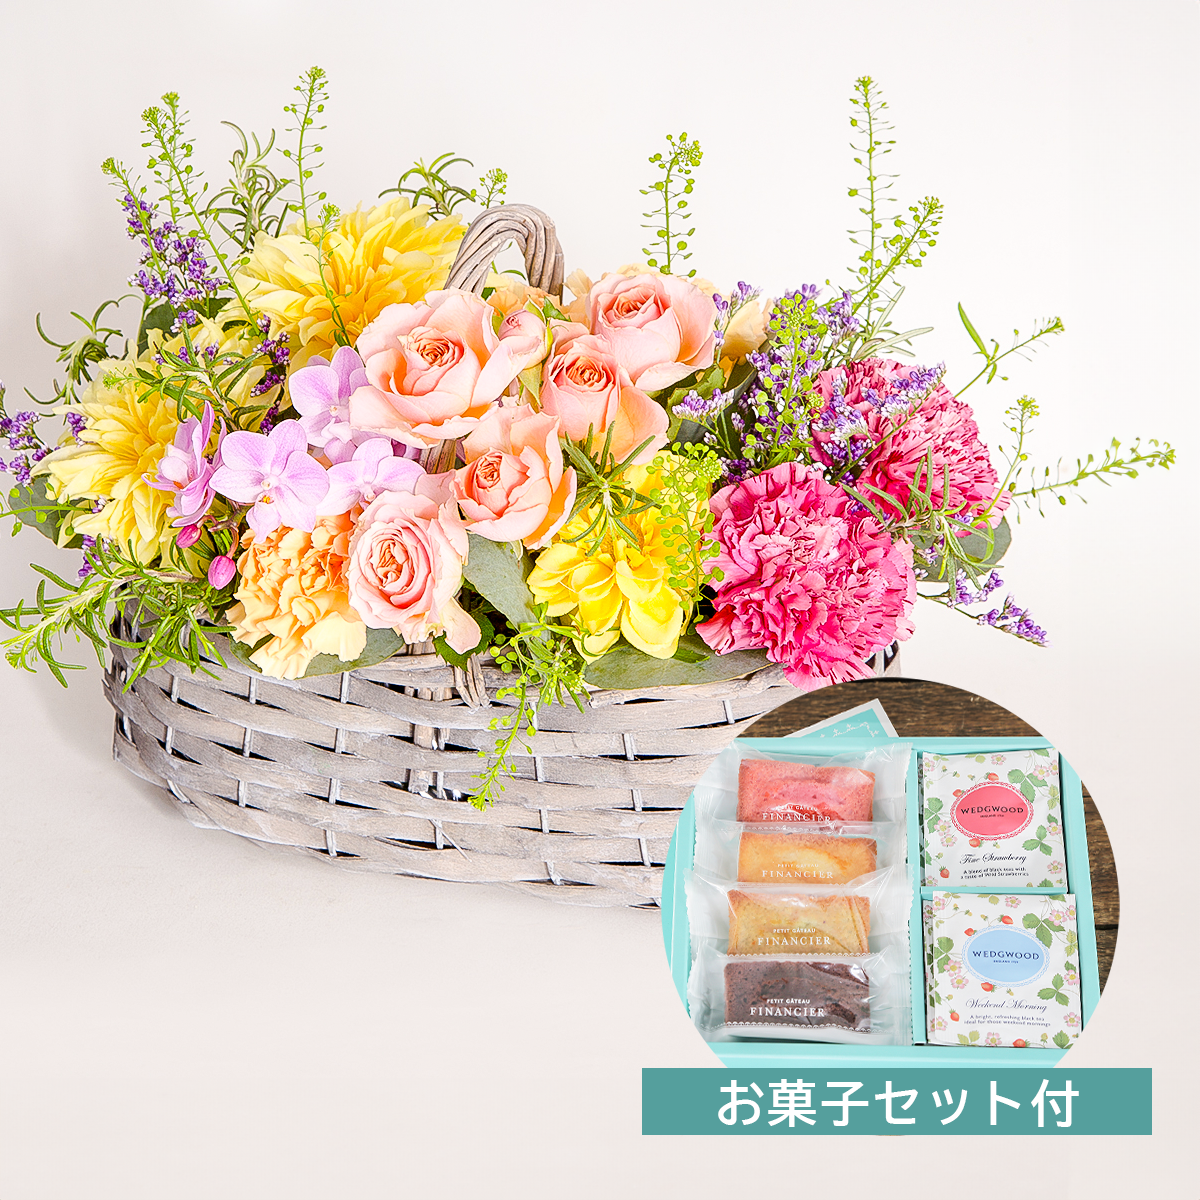 【母の日のプレゼント】ひまわり、カーネーション、バラのアレンジメント お菓子セット 花屋の通販 贈り物 フラワーギフト 大阪の花屋